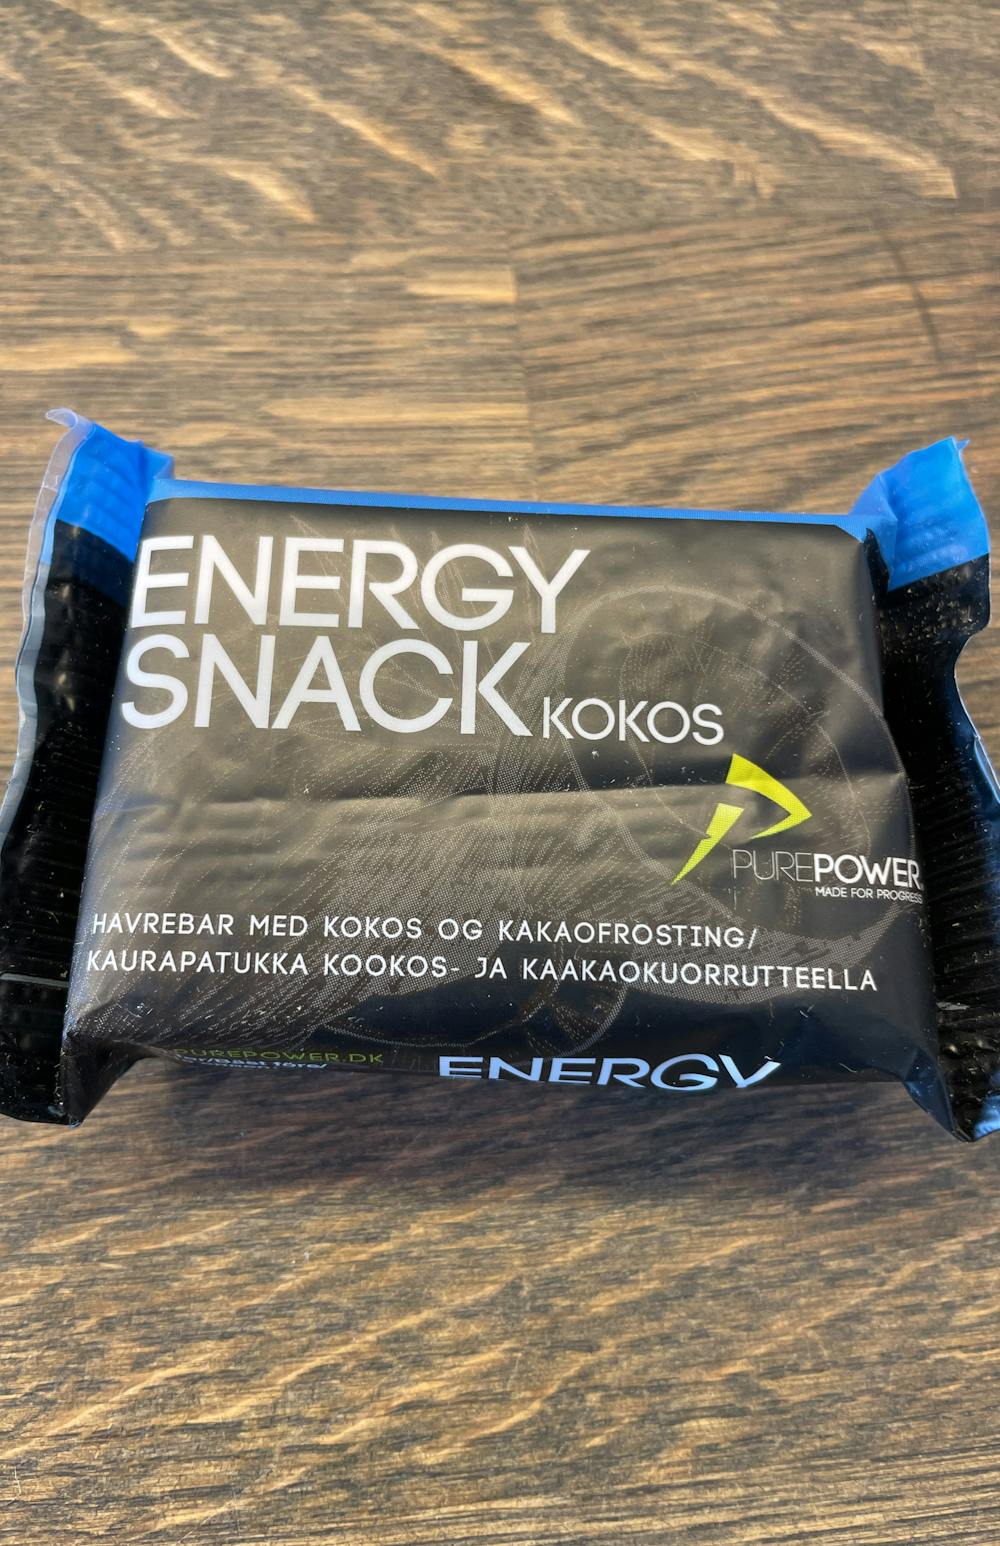 Energi snack kokos, PurePower